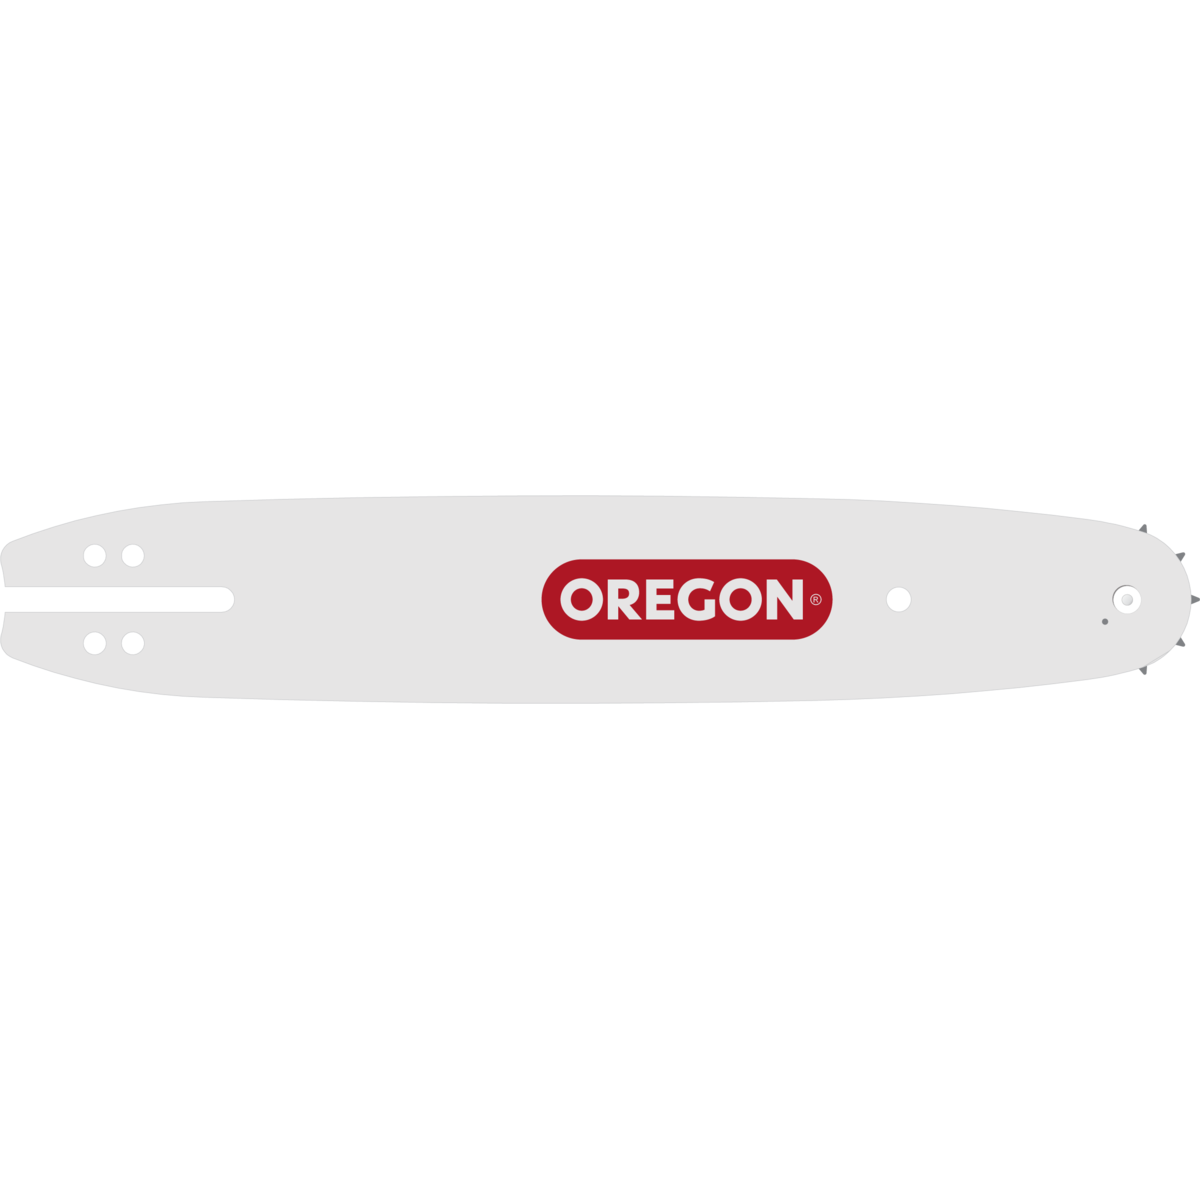 Λάμα Αλυσοπρίονου 25cm/10" 1.1mm Oregon-MaShop.gr